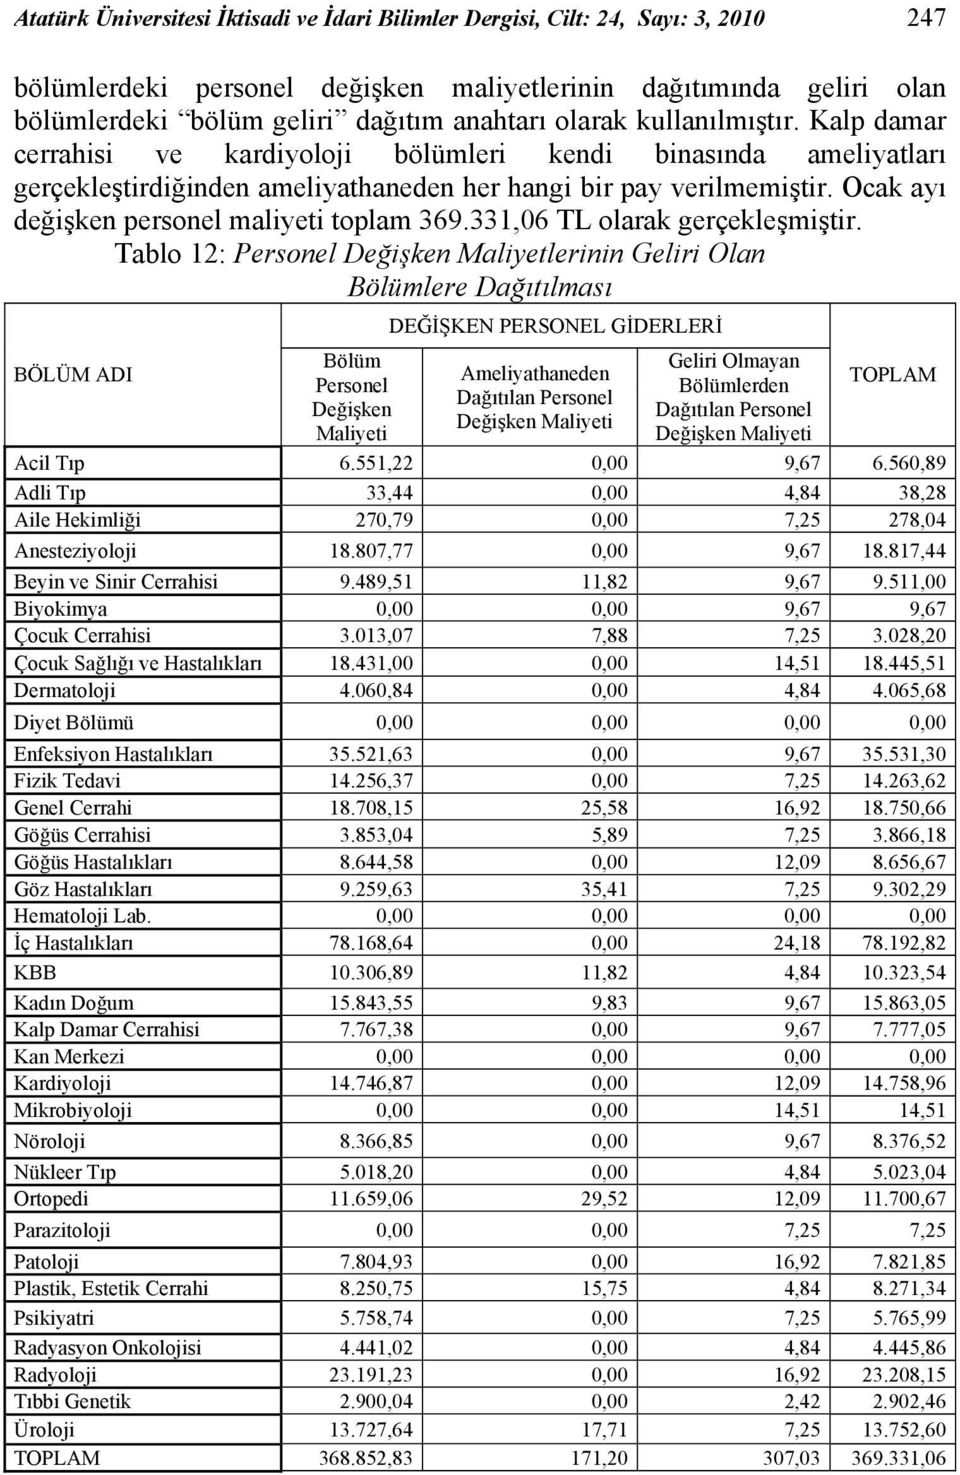 Ocak ayı değişken personel maliyeti toplam 369.331,06 TL olarak gerçekleşmiştir.